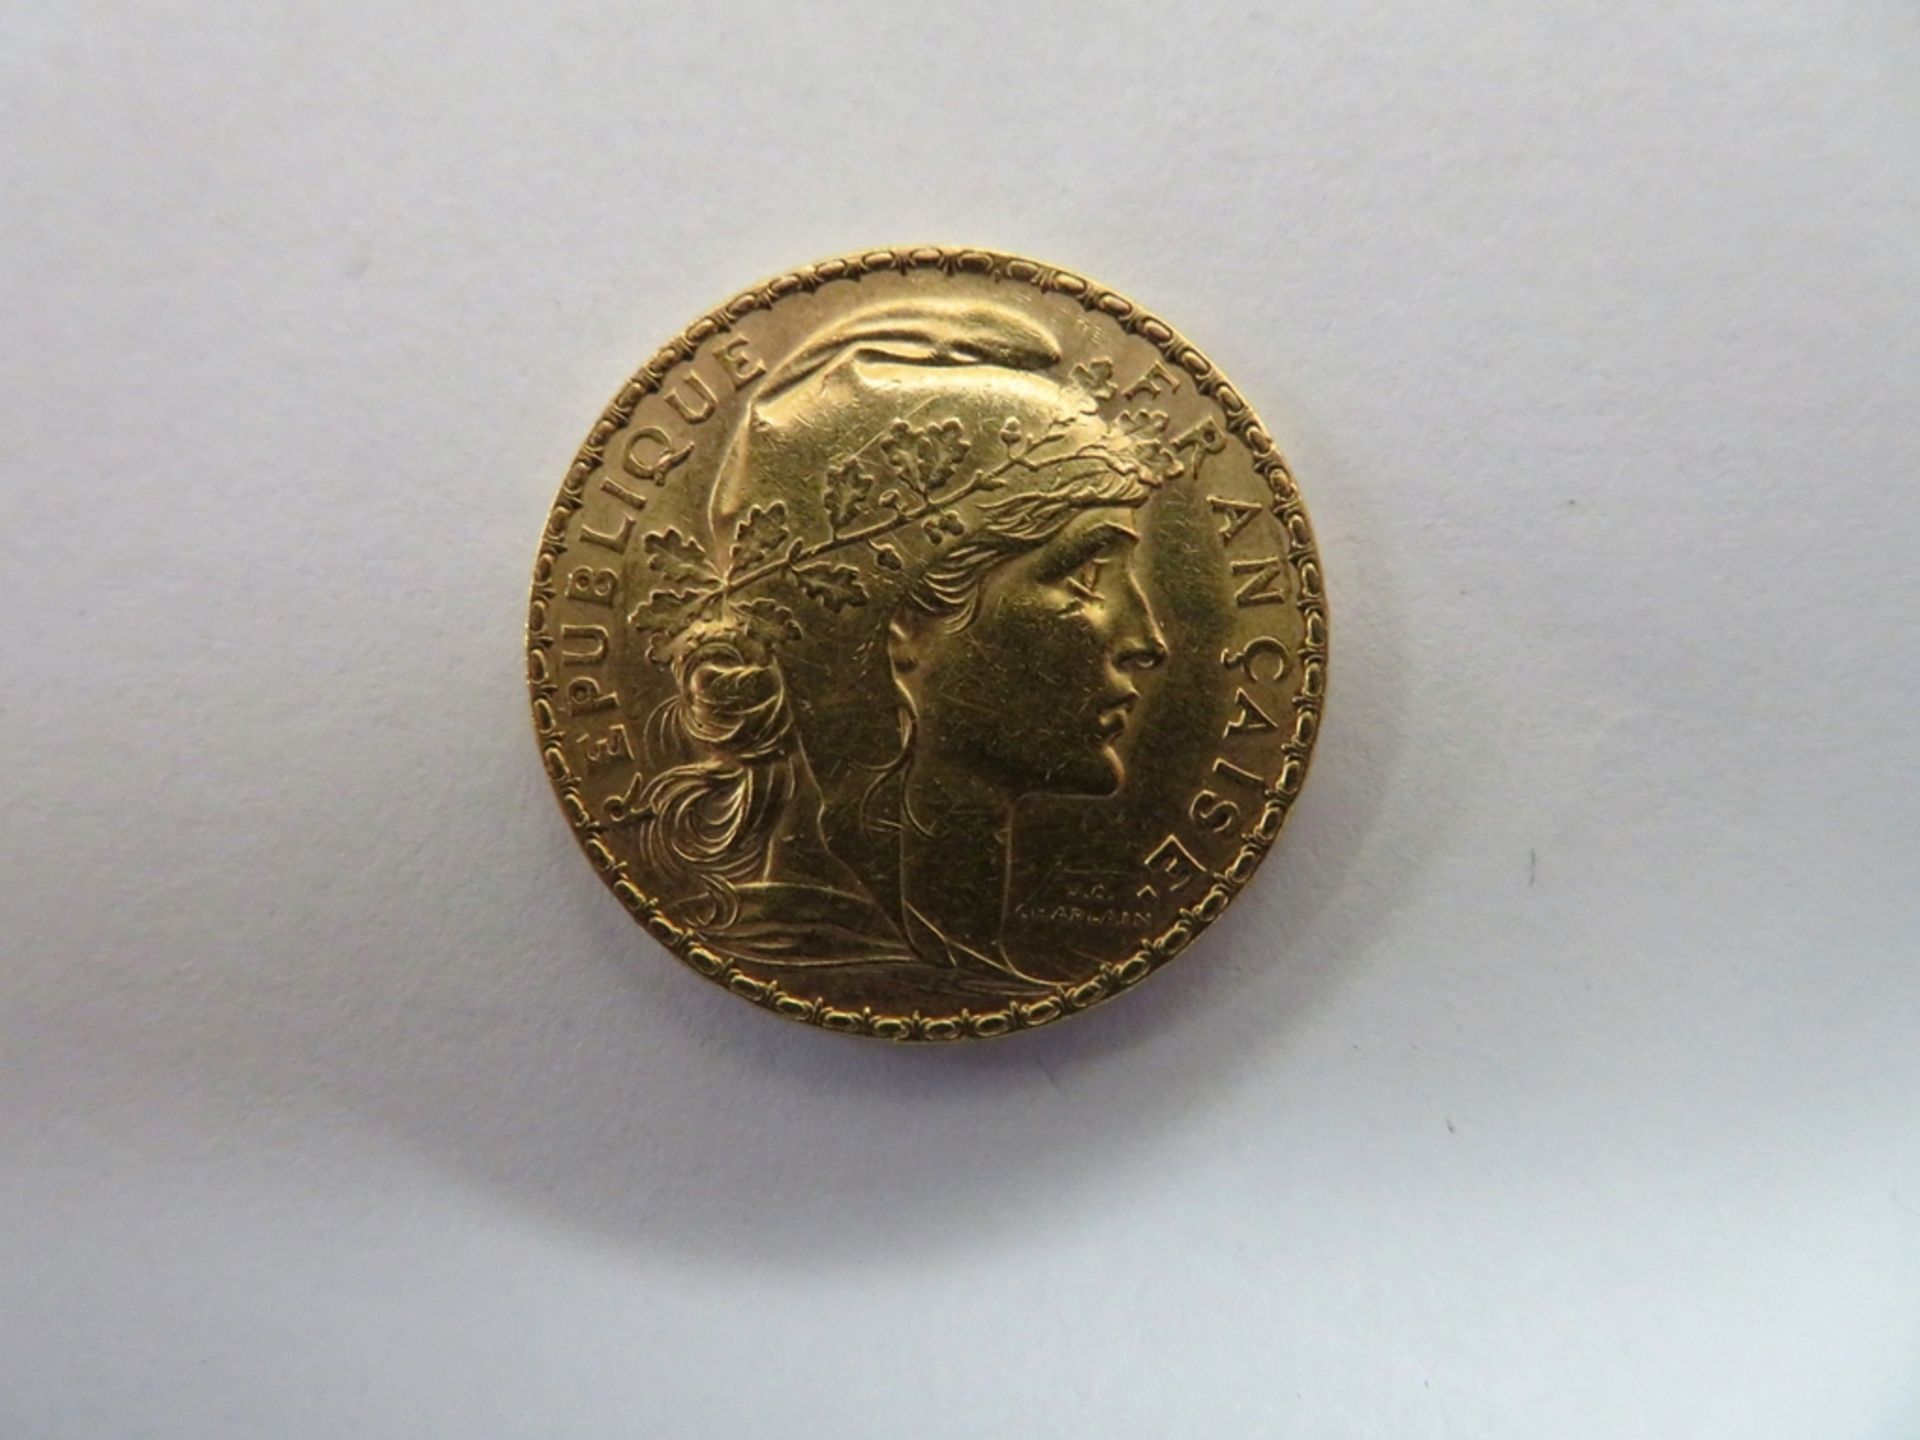 Goldmünze, Frankreich, 20 Francs, 1911, 6,3 g, d 2,1 cm.